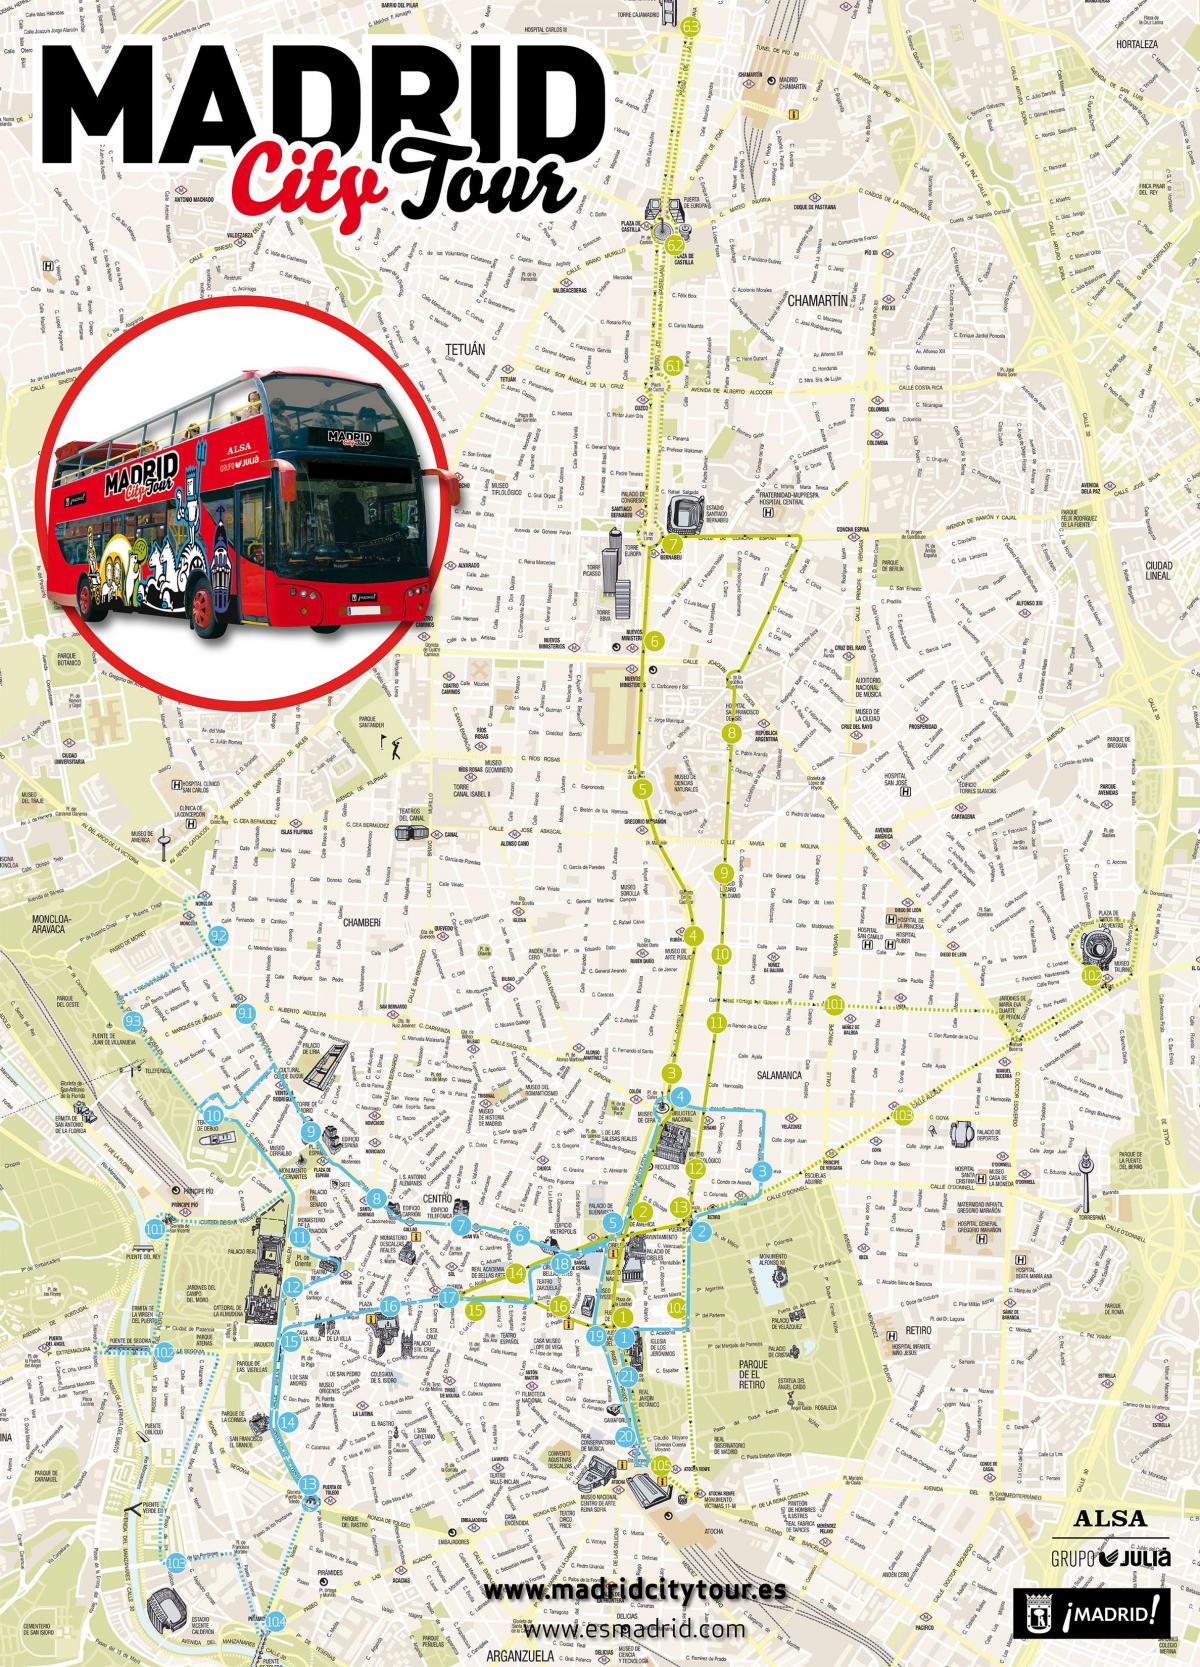 Madrid bus wisata peta